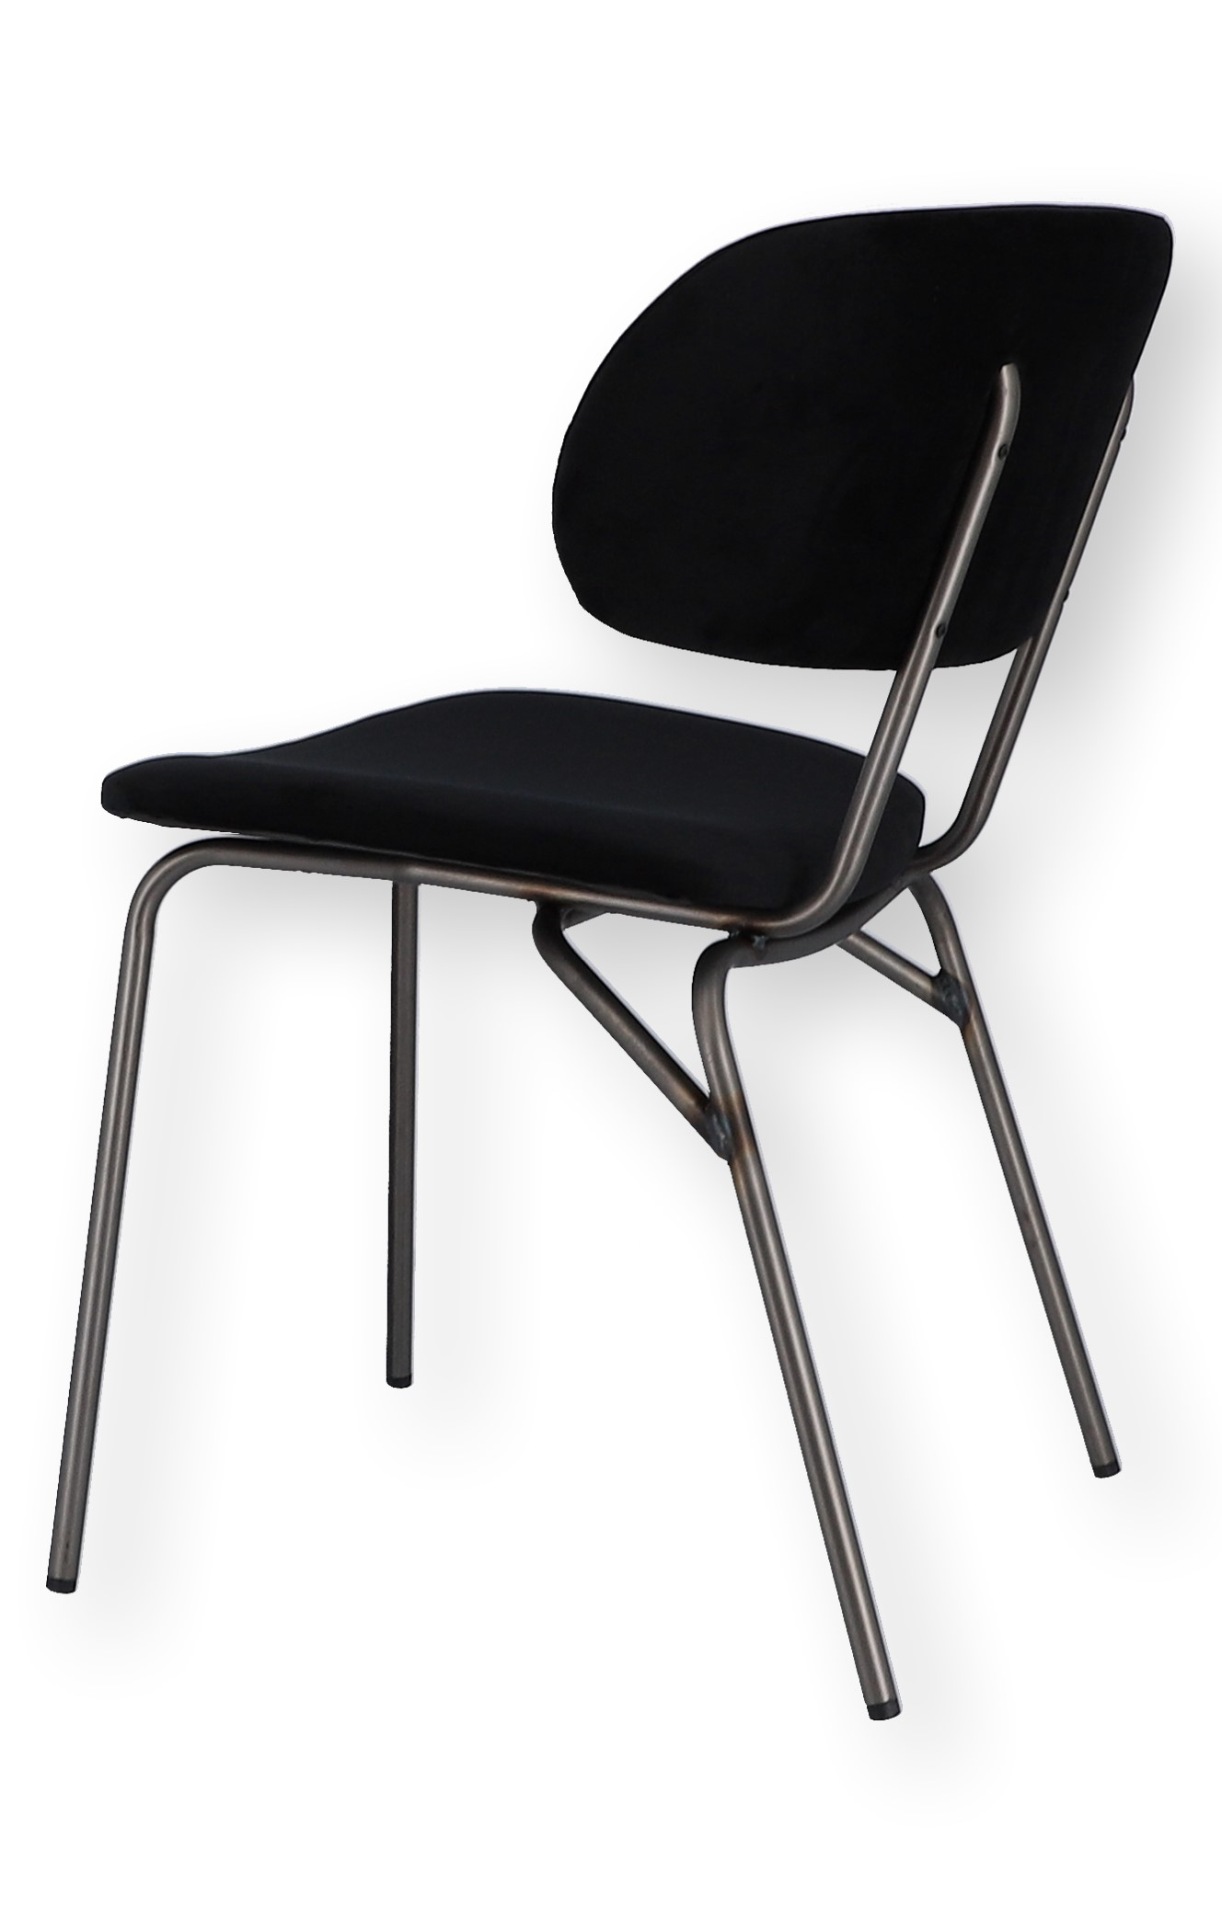 Der moderne Stuhl Giulia wurde aus einem Metall Gestell gefertigt. Die Sitz- und Rückenfläche ist aus einem Samt Bezug. Der Stuhl hat eine schwarze Farbe und ist von der Marke Jan Kurtz.